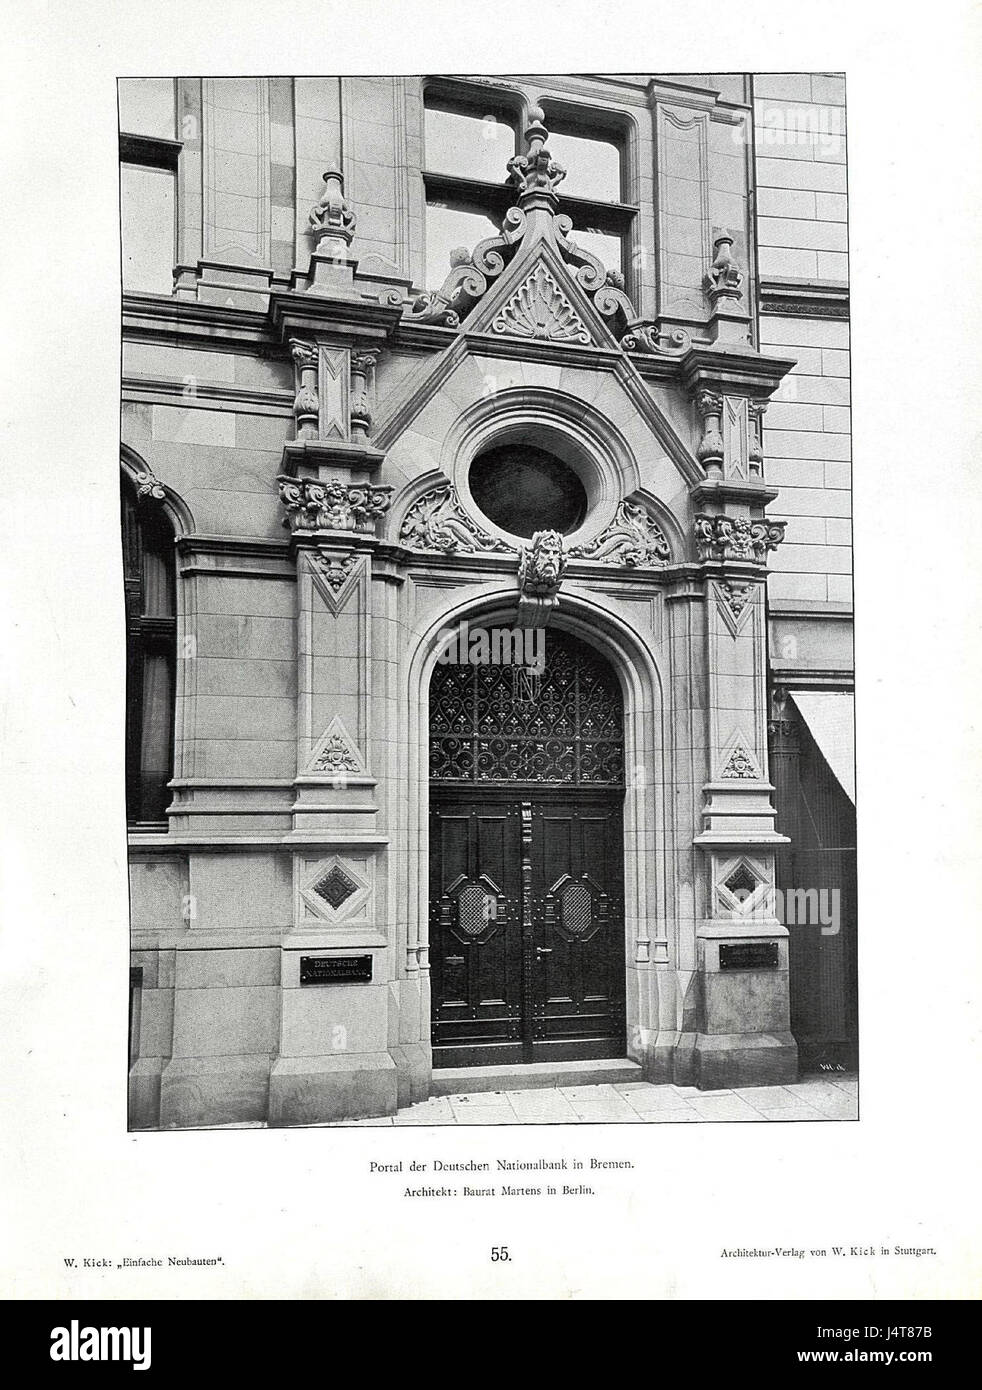 Einfache Neubauten, Stuttgart 1890, Portal der Deutschen Nationalbank in Bremen, Wilhelm Kick, Architekt Baurat Martens in Berlin Stockfoto